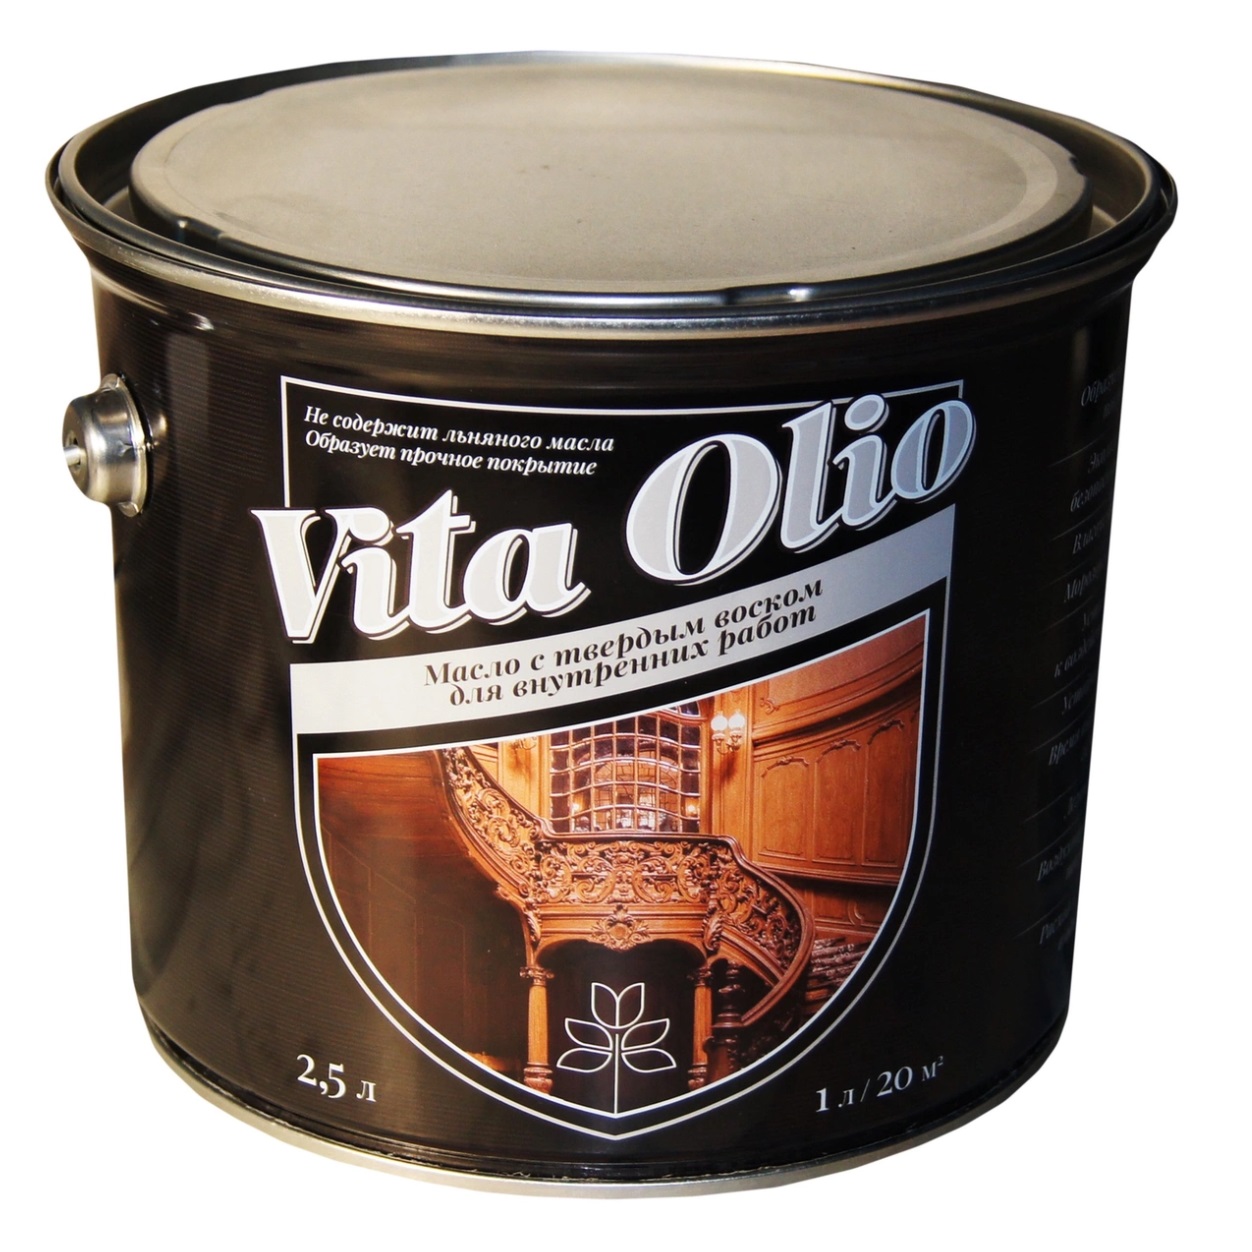 Масло VITA OLIO для внутренних работ с твердым воском шелковисто-матовое бесцветное. 2,5 л.